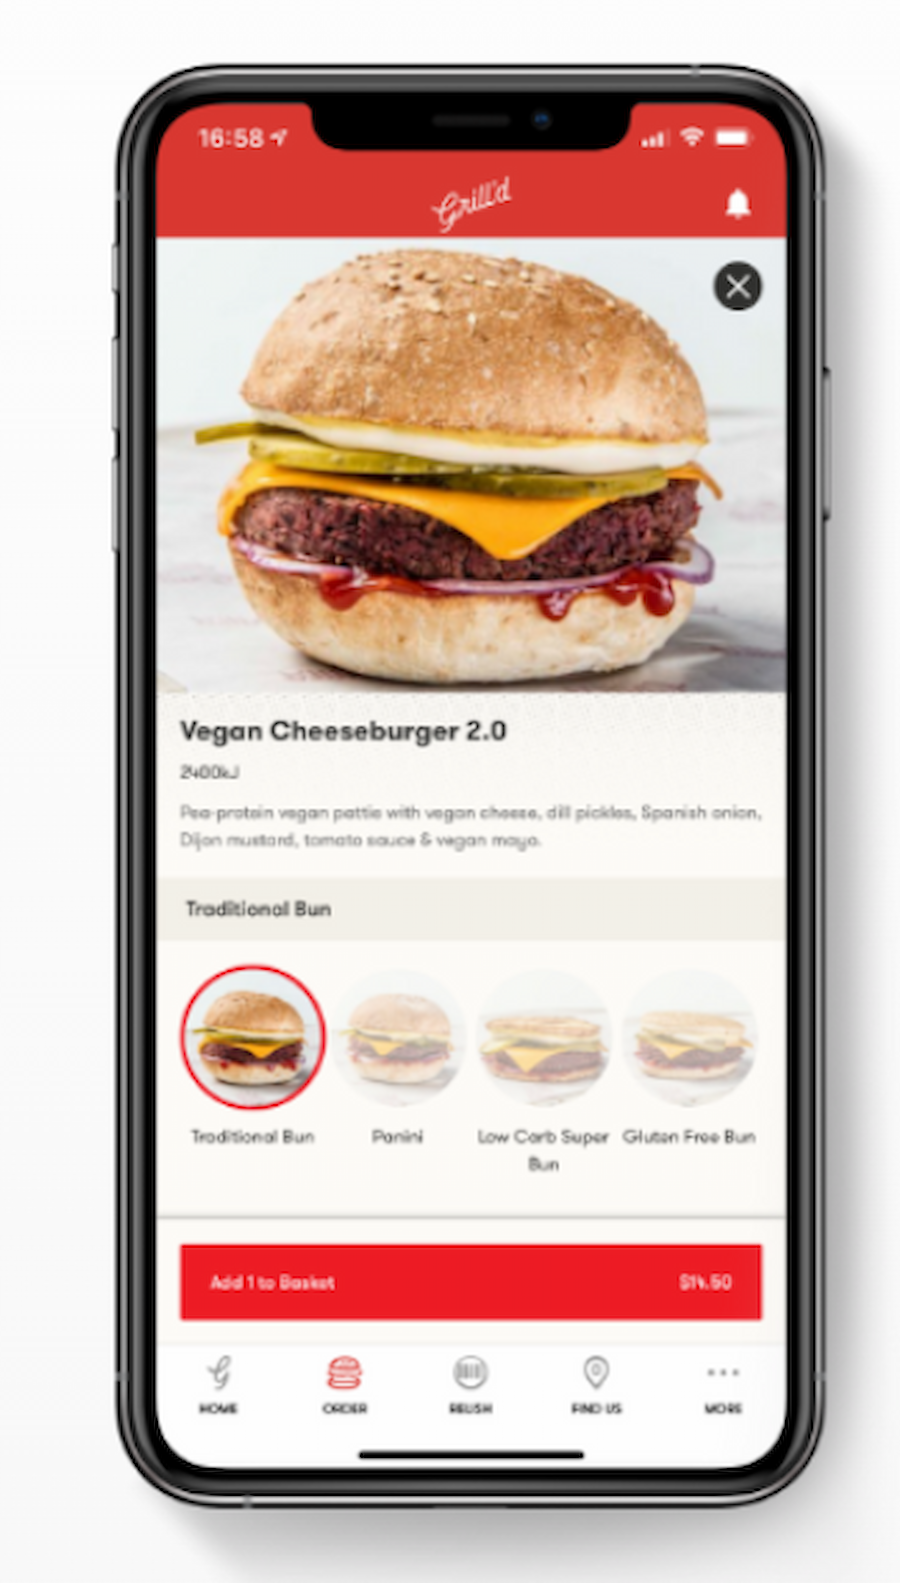 EAD: Grill'd food ordering app